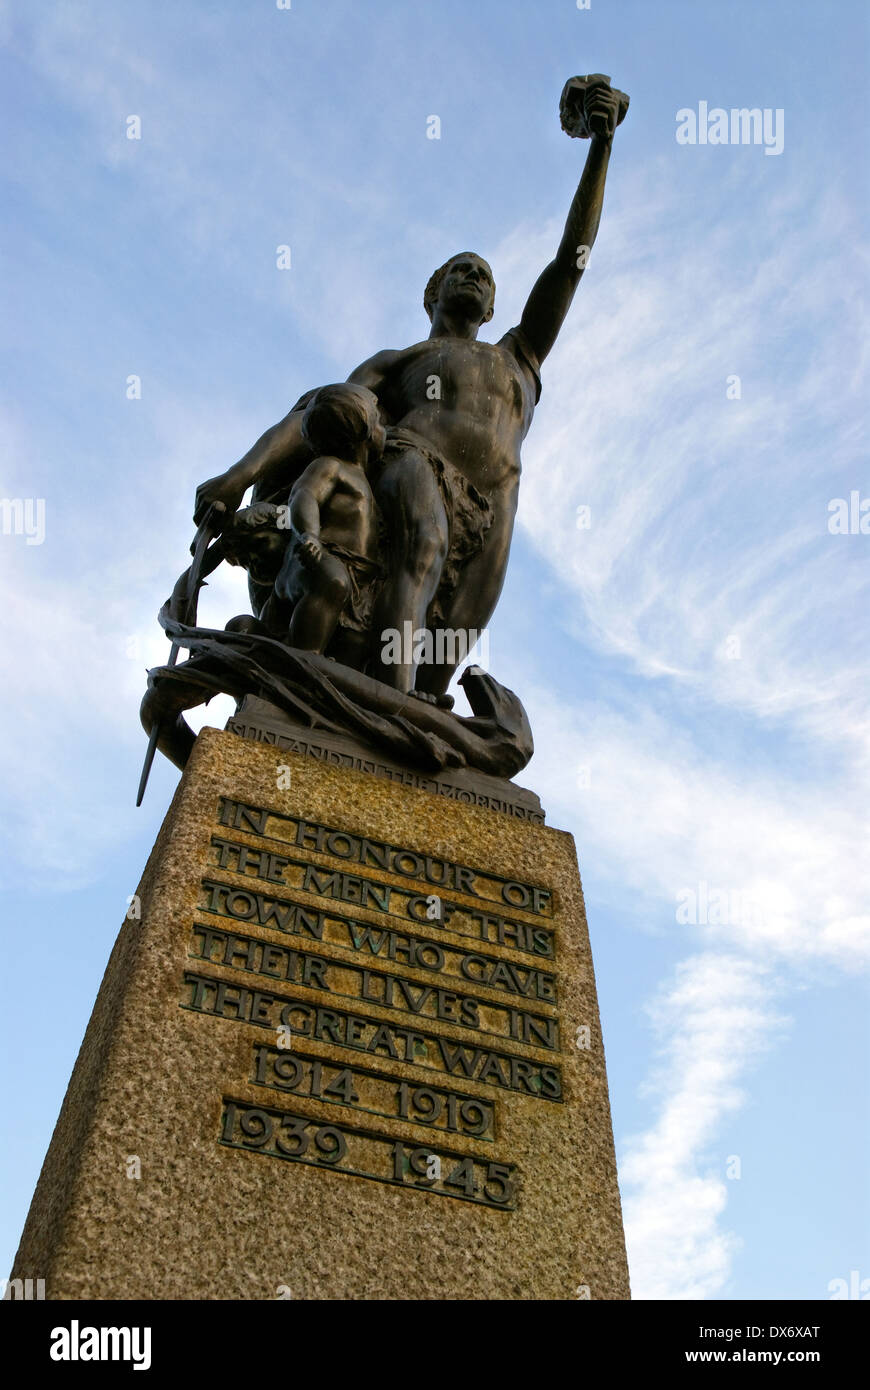 Statua in memoria di coloro che sono morti nelle guerre mondiali del 1914-18 e 1939-45, Kingston, Surrey, Regno Unito. Foto Stock